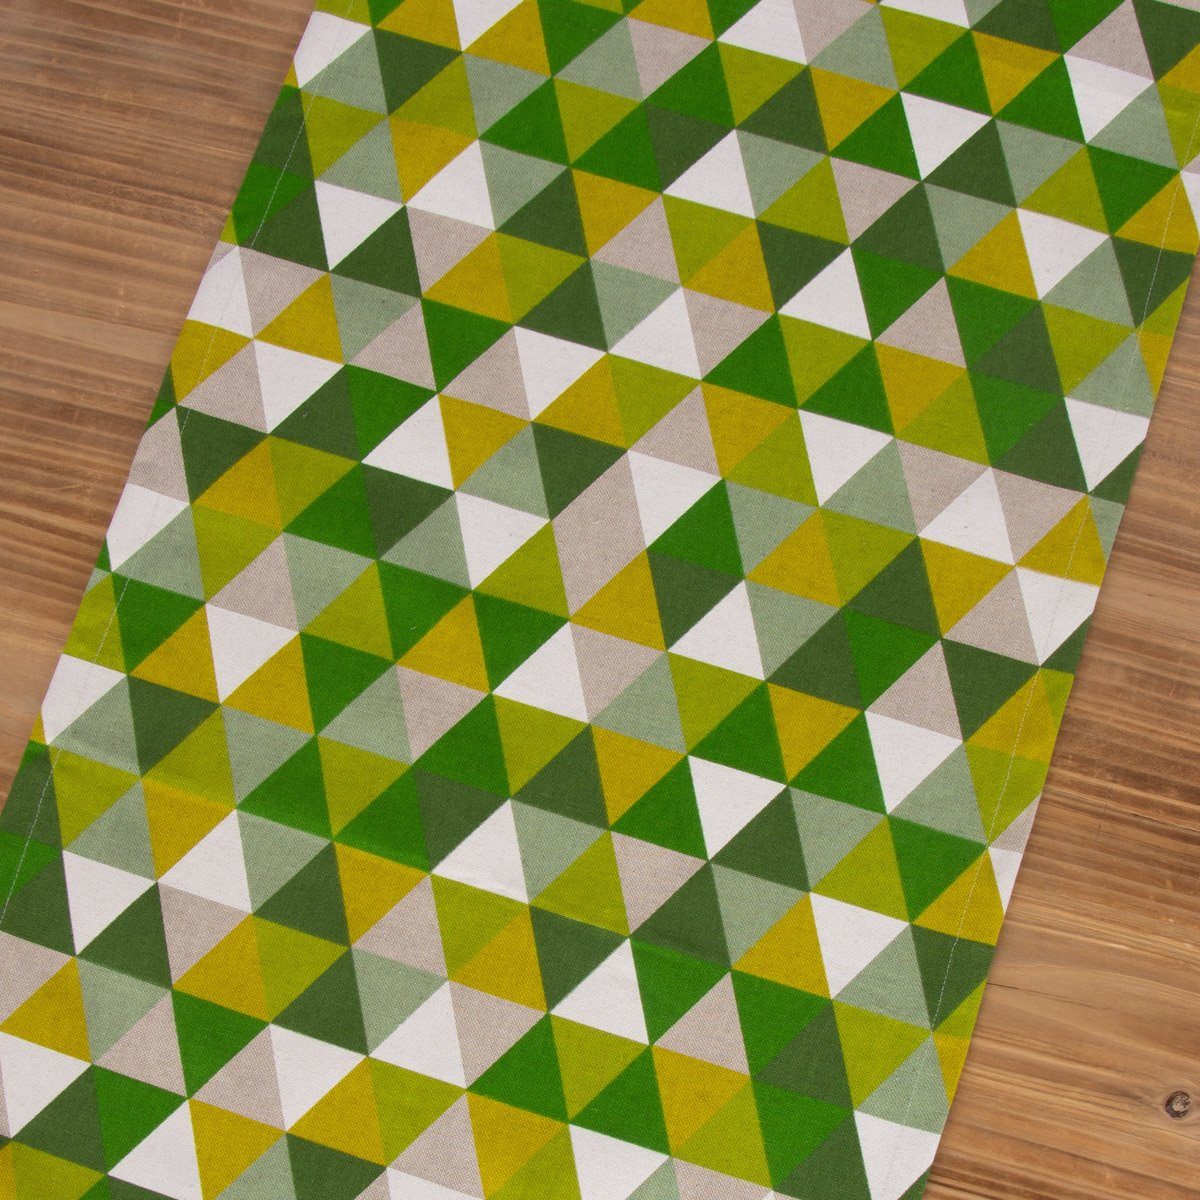 40x160cm, LEBEN. Tischläufer Töne SCHÖNER Tischläufer grün handmade SCHÖNER LEBEN. Dreiecke